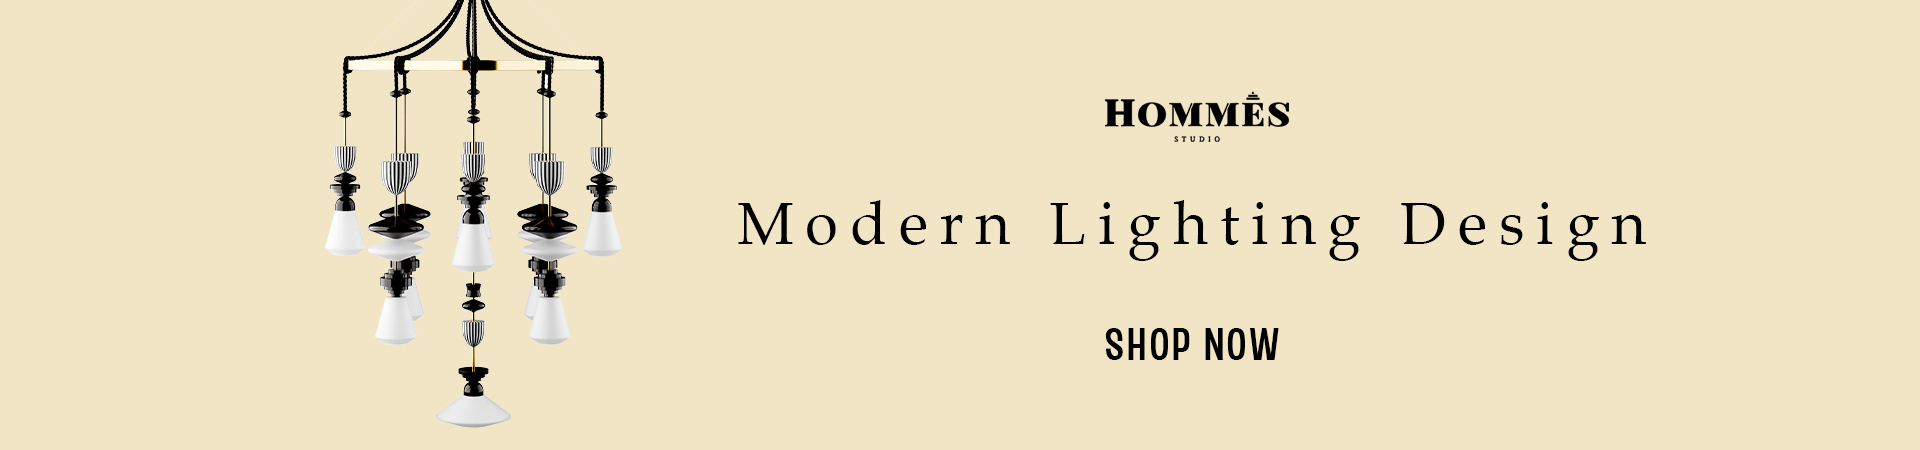 hommes studio lighting 1 banner blog